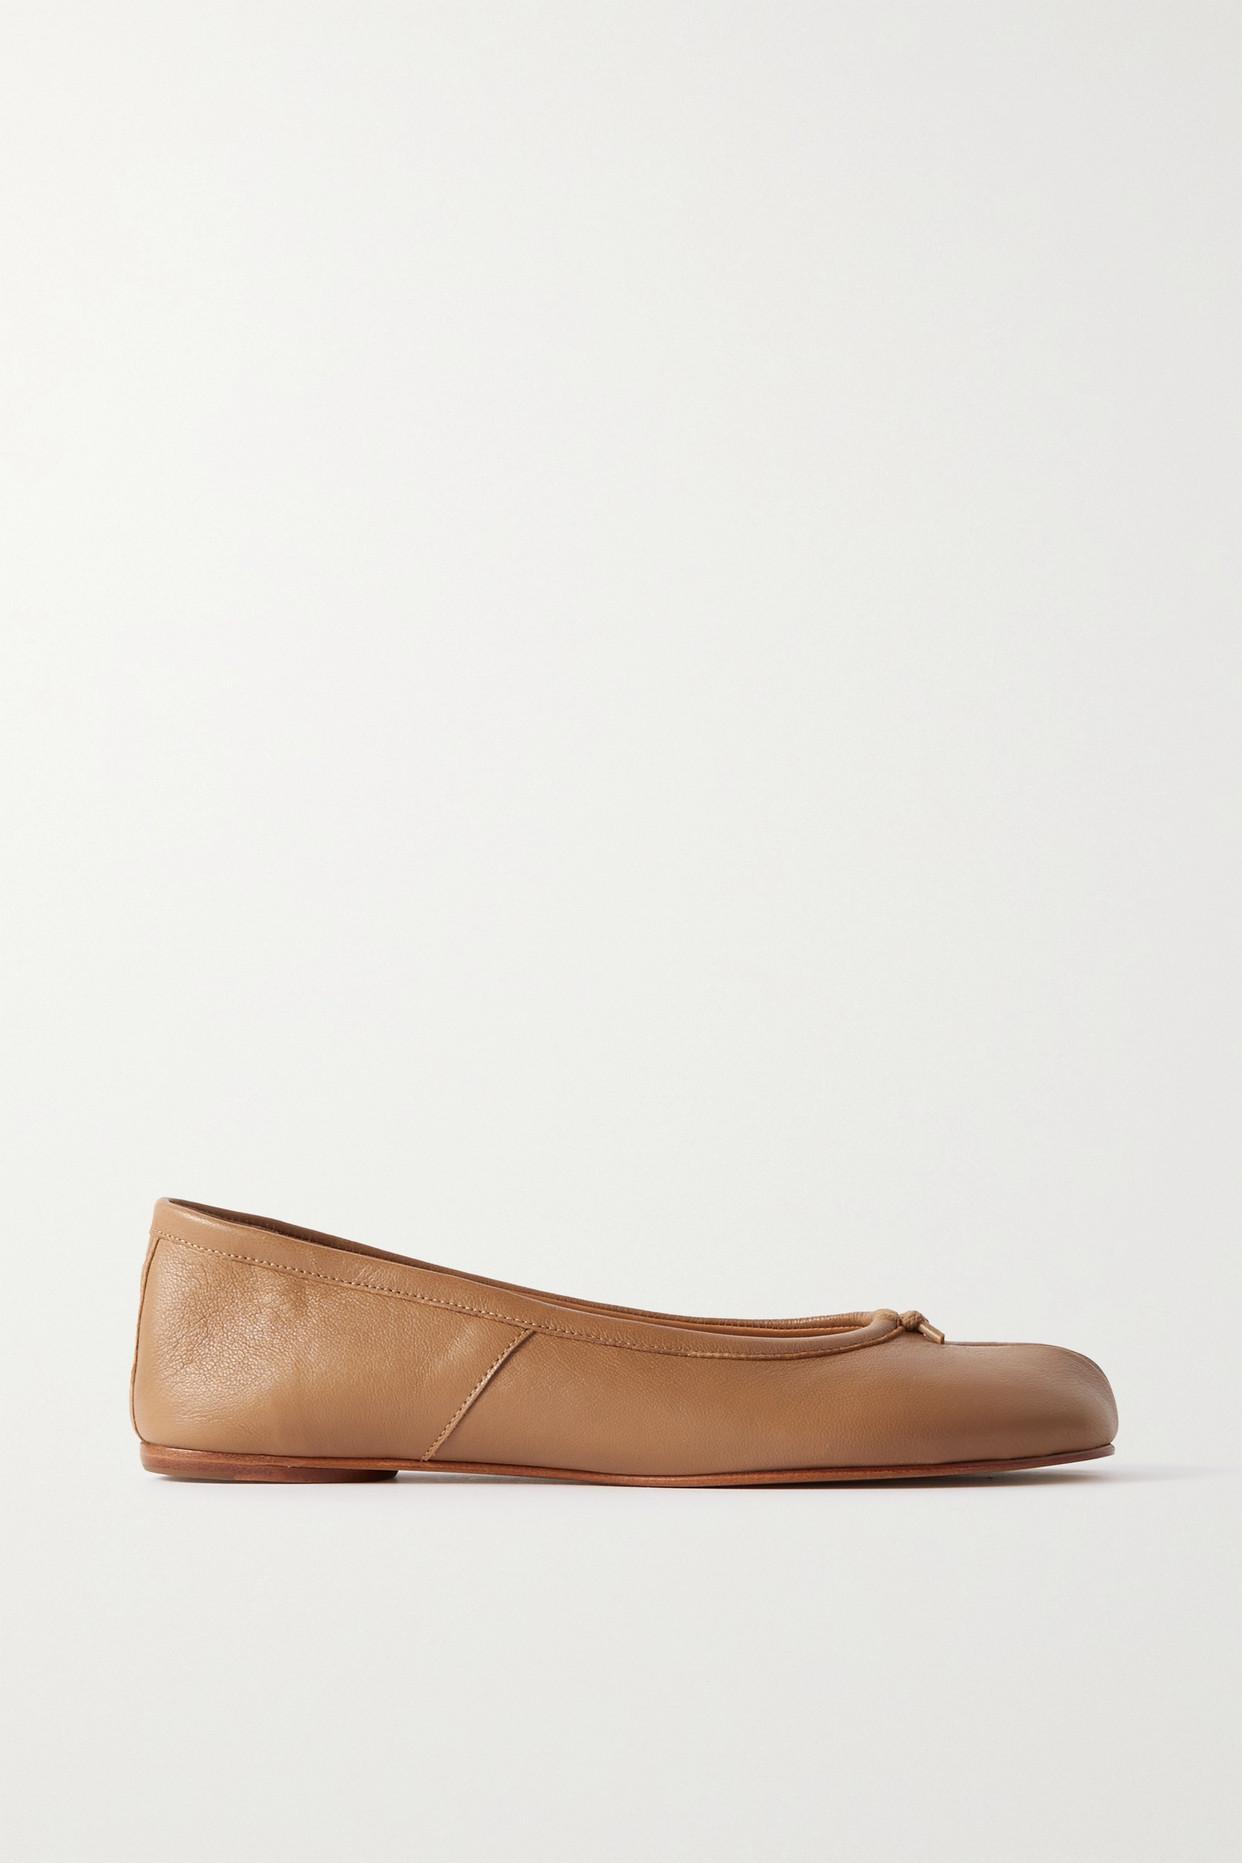 Split Toe Shoes, Tabi Split-toe Tabi Flats Shoes, Women Tabi Ballet Shoes  Sandal Split Toe -  Canada